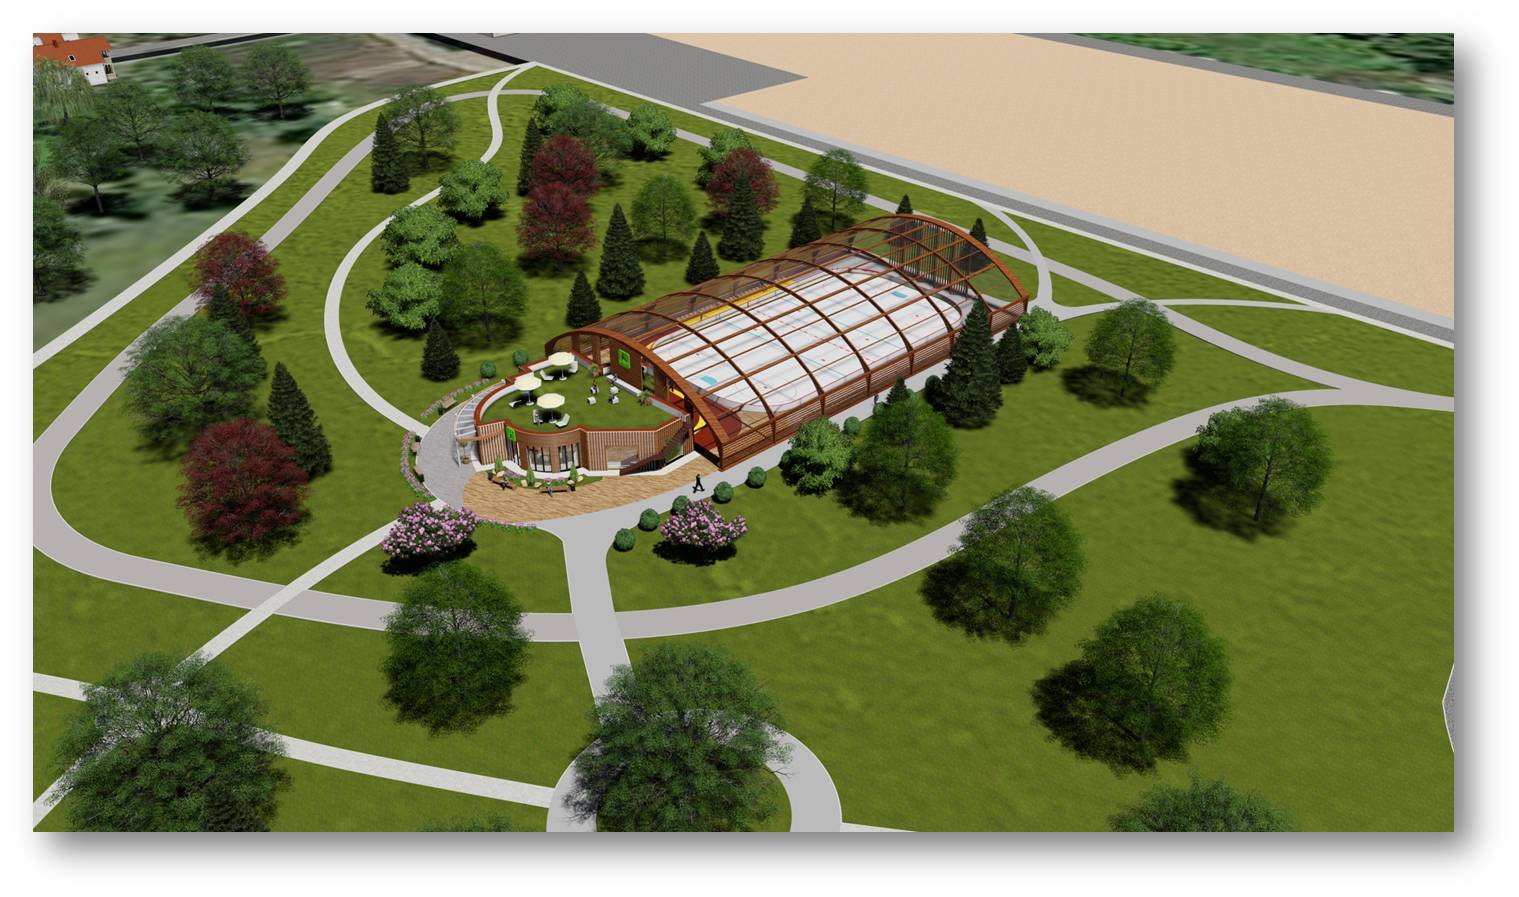 Каток с искусственным покрытием планируют построить в могилевском парке в Подниколье в 2020 году